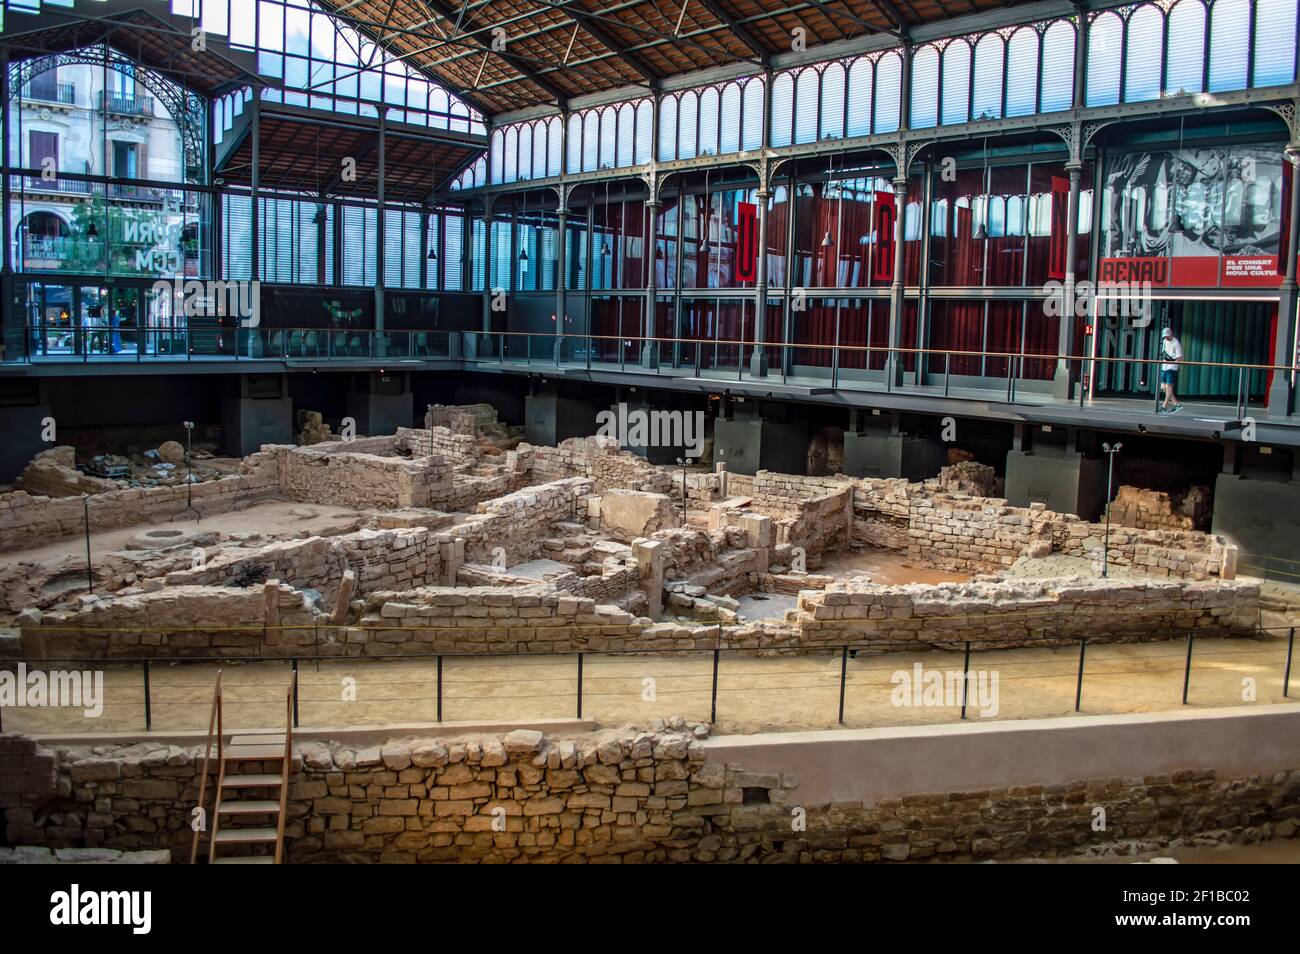 Barcellona, Spagna - 25 luglio 2019: Rovine della città medievale presso il sito archeologico del centro culturale El Born a Barcellona, Catalogna, Spagna Foto Stock